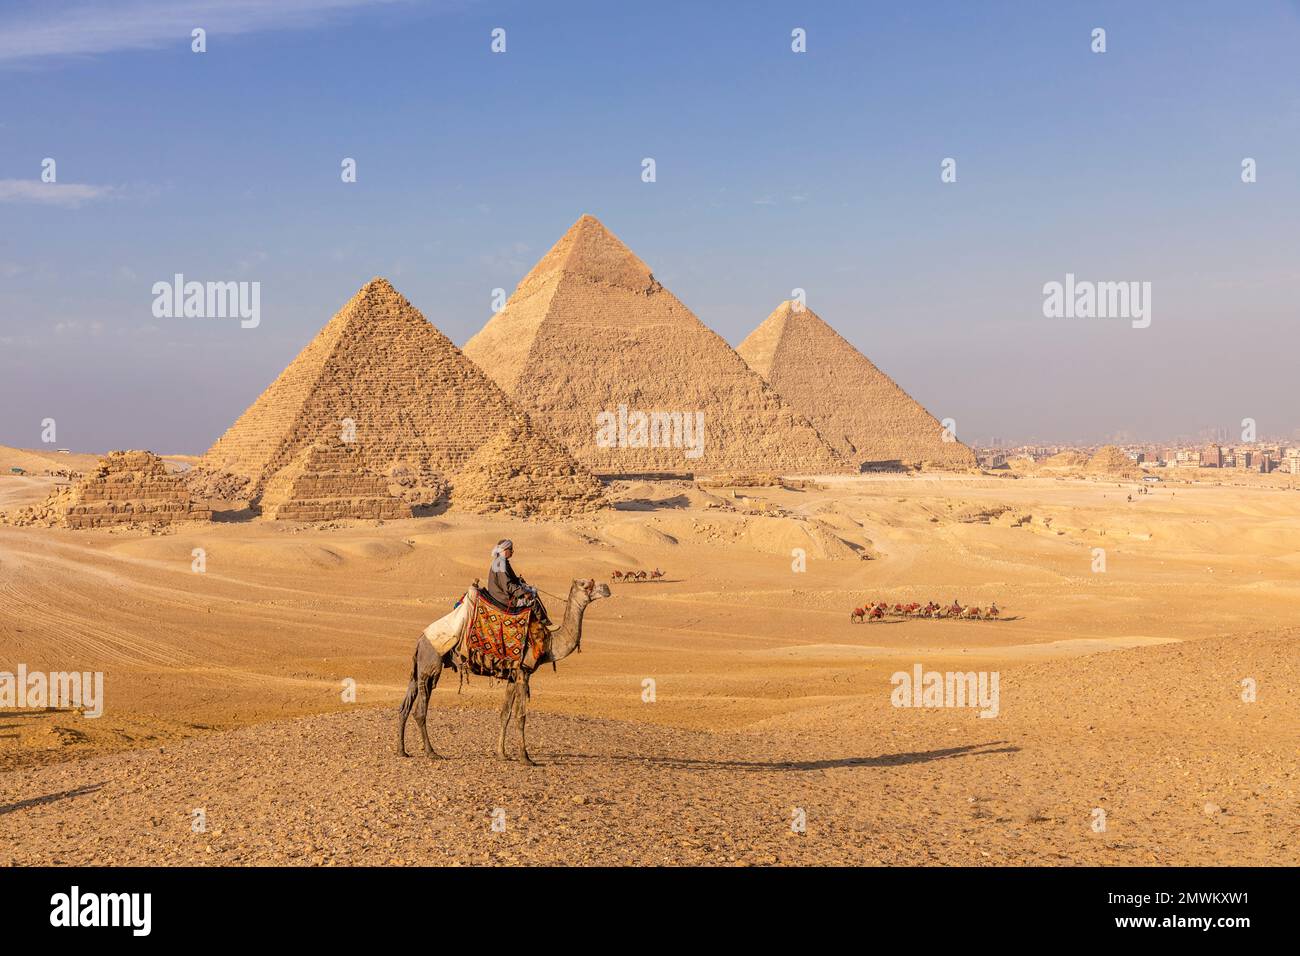 Pyramides de Gizeh avec chameau au coucher du soleil, le Caire, Egypte Banque D'Images